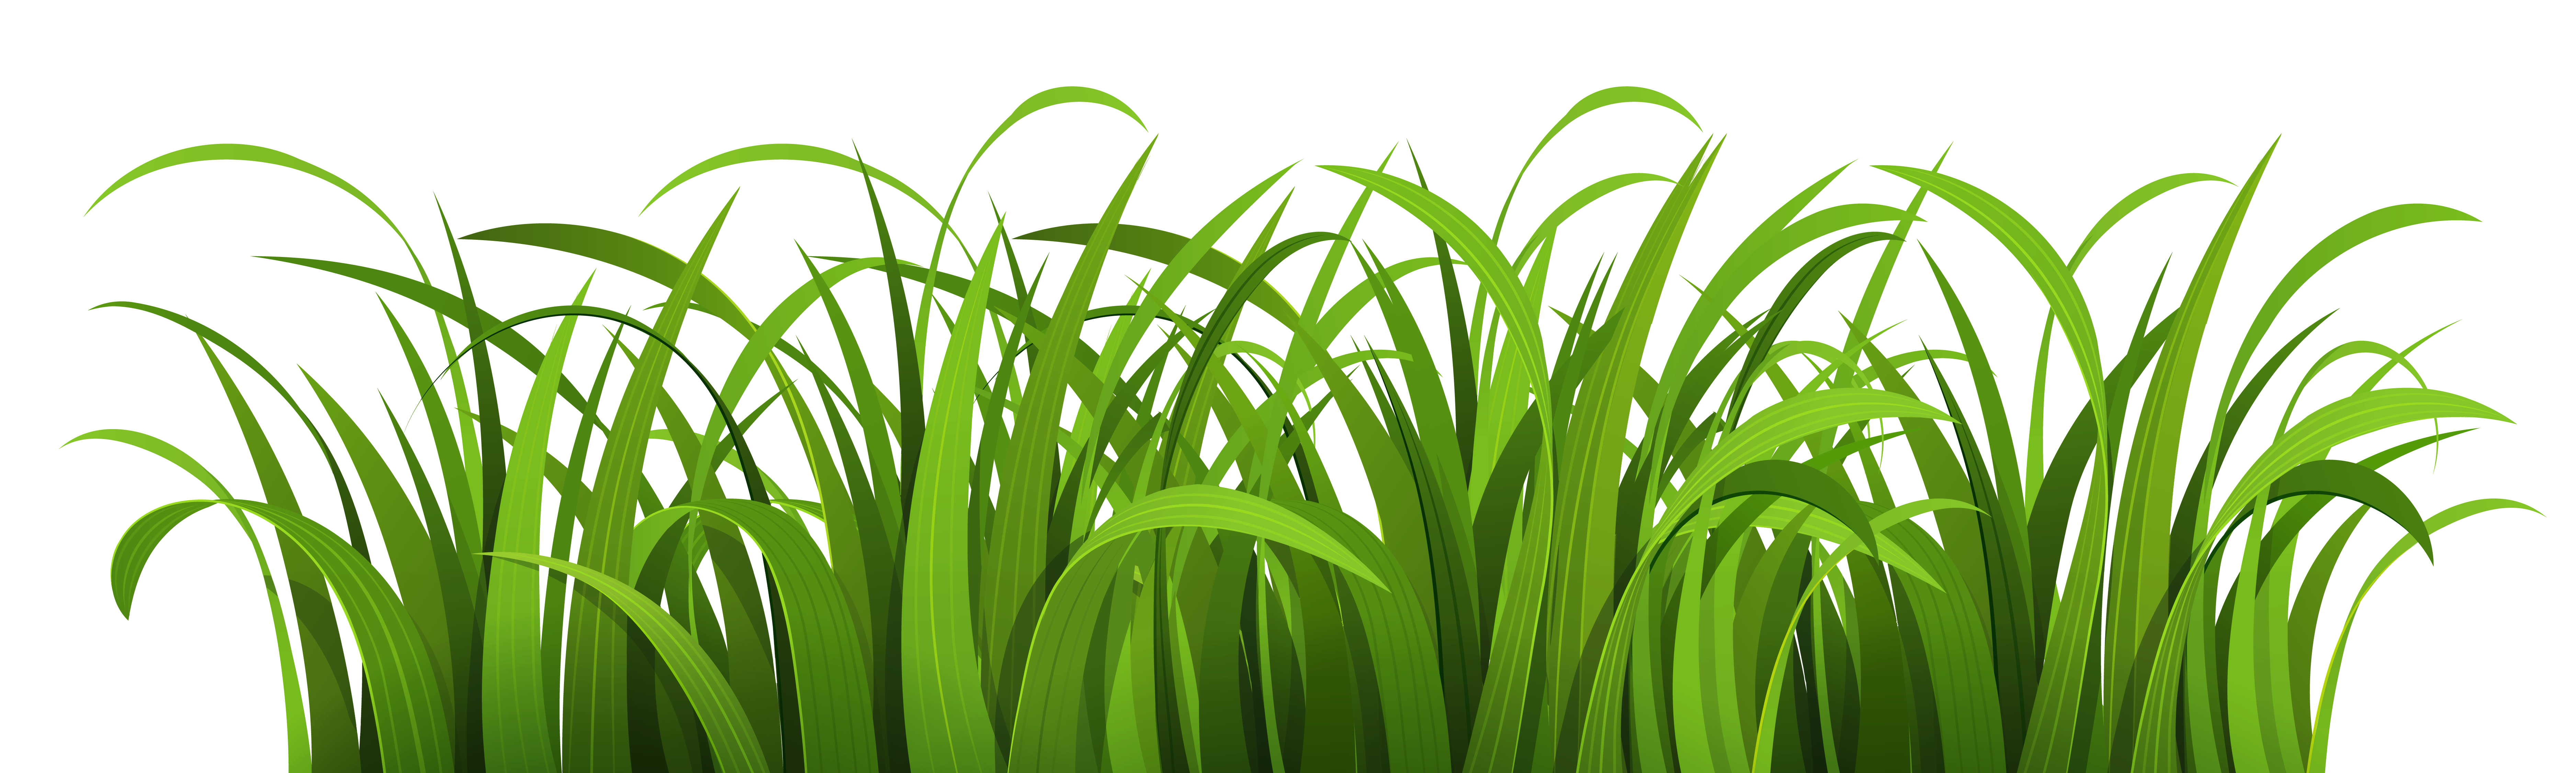 grass clipart herbs